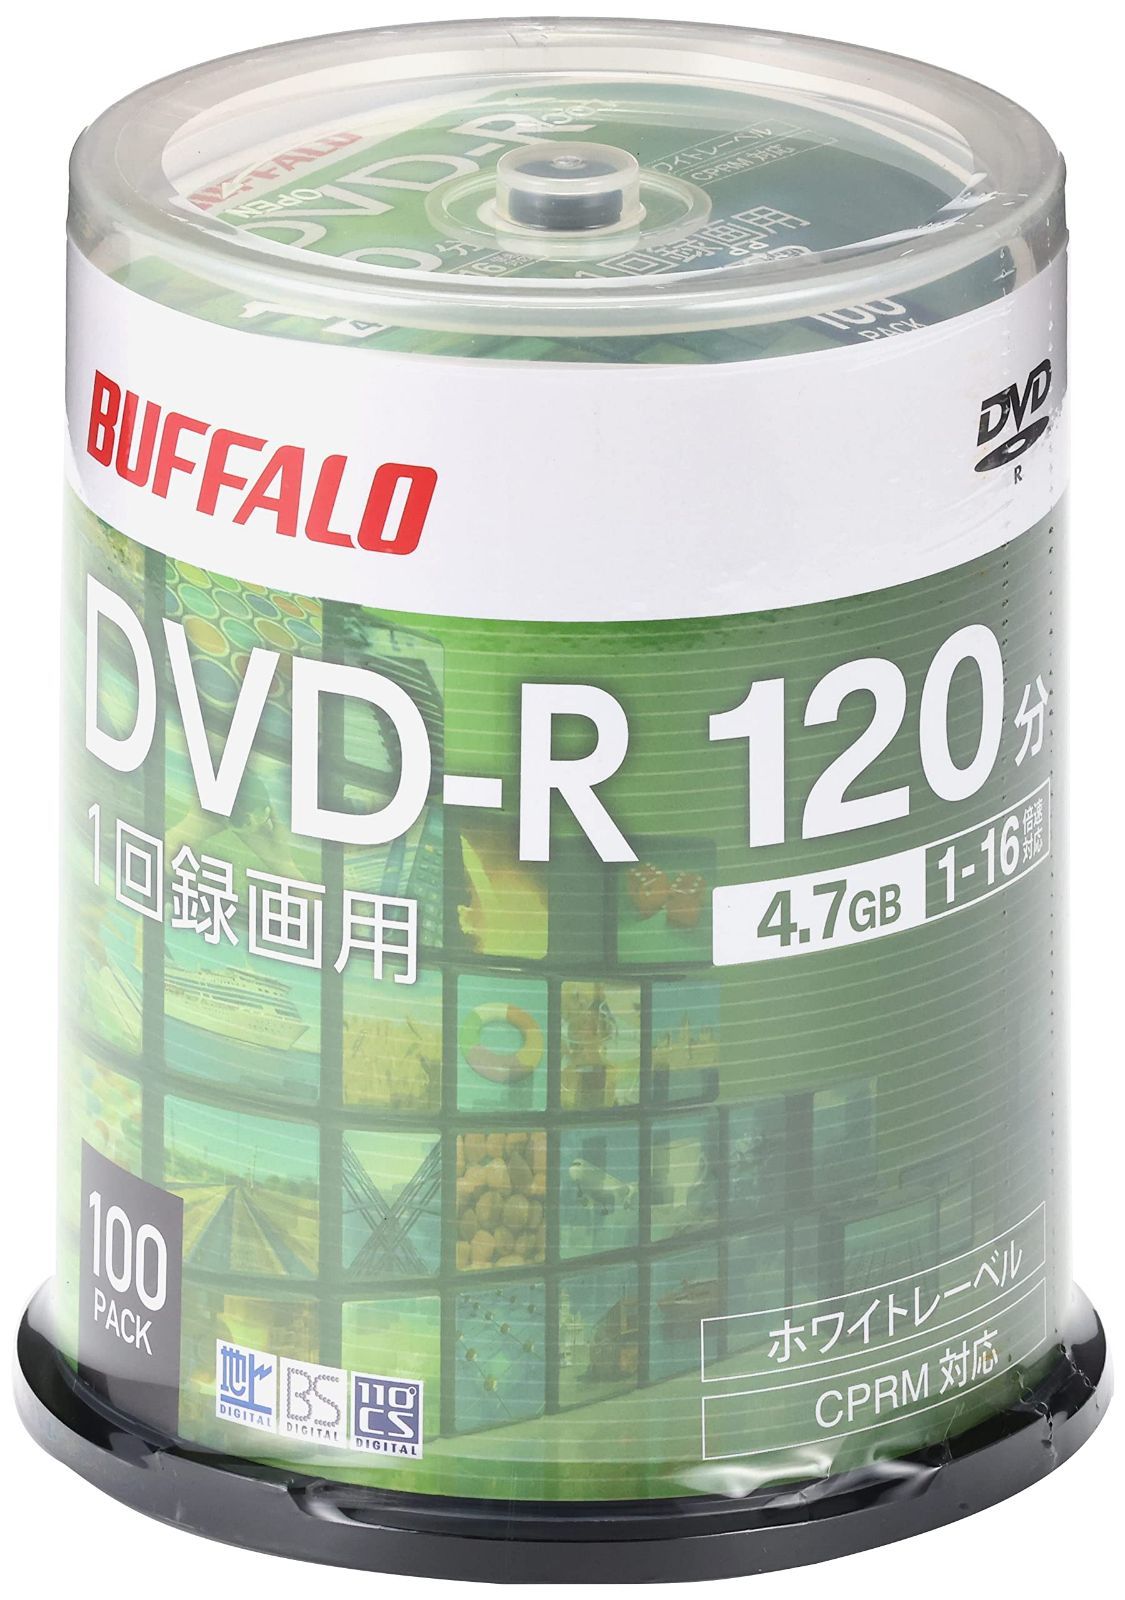 バッファロー DVD-R 1回録画用 4.7GB 100枚 スピンドル CPRM 片面 1-16倍速 ホワイトレーベル RO-DR47V-100PW N